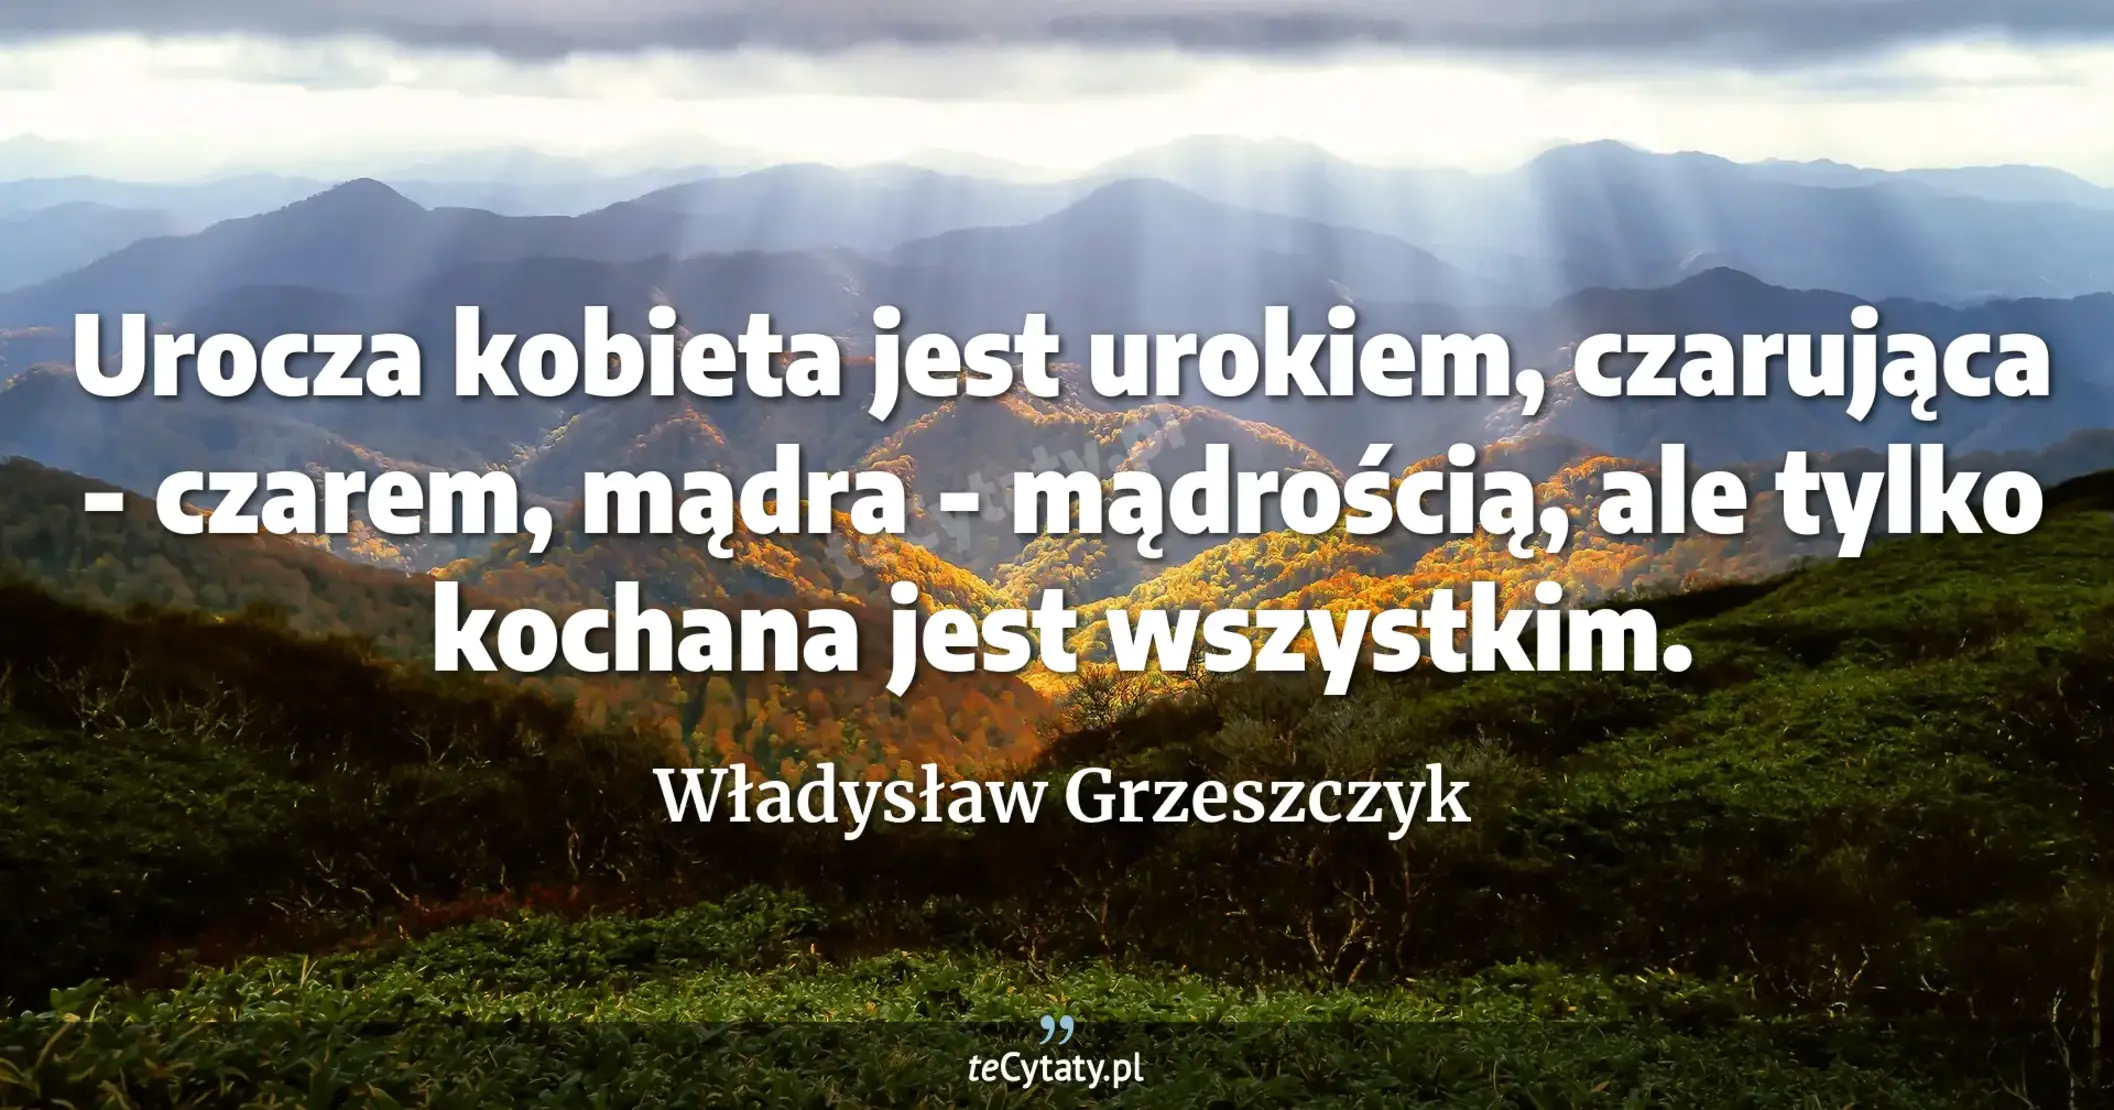 Urocza kobieta jest urokiem, czarująca - czarem, mądra - mądrością, ale tylko kochana jest wszystkim. - Władysław Grzeszczyk